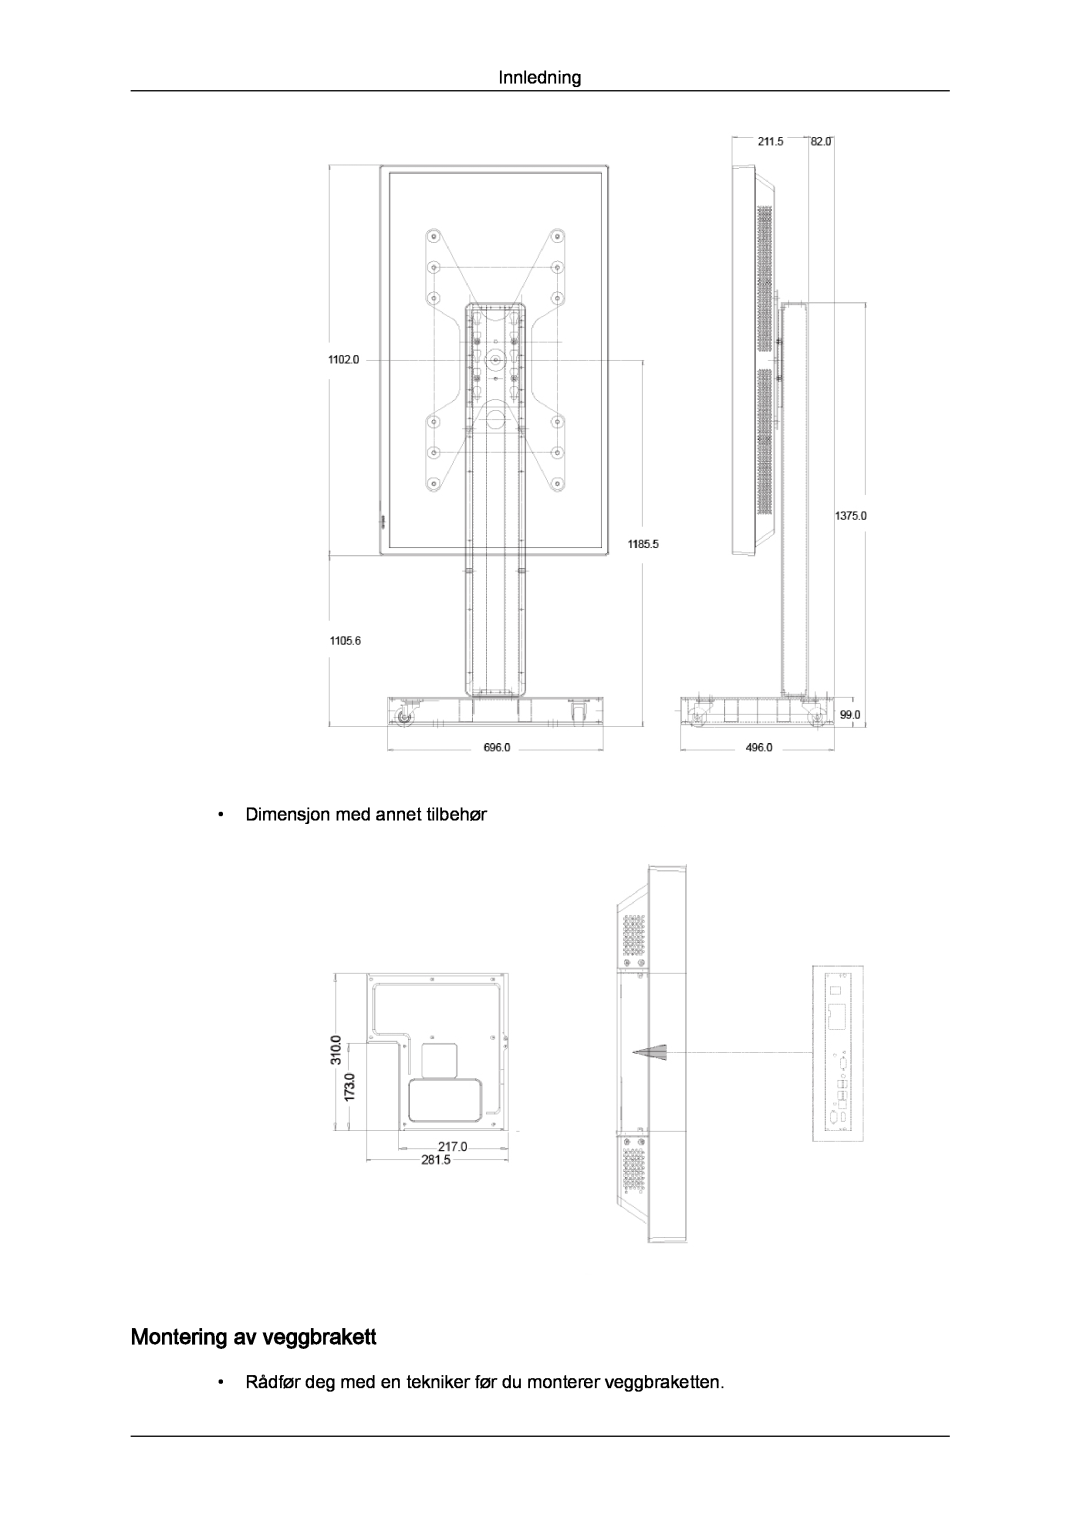 Samsung LH40CRPMBC/EN, LH46CRPMBD/EN, LH46CRPMBC/EN manual Montering av veggbrakett, Innledning Dimensjon med annet tilbehør 